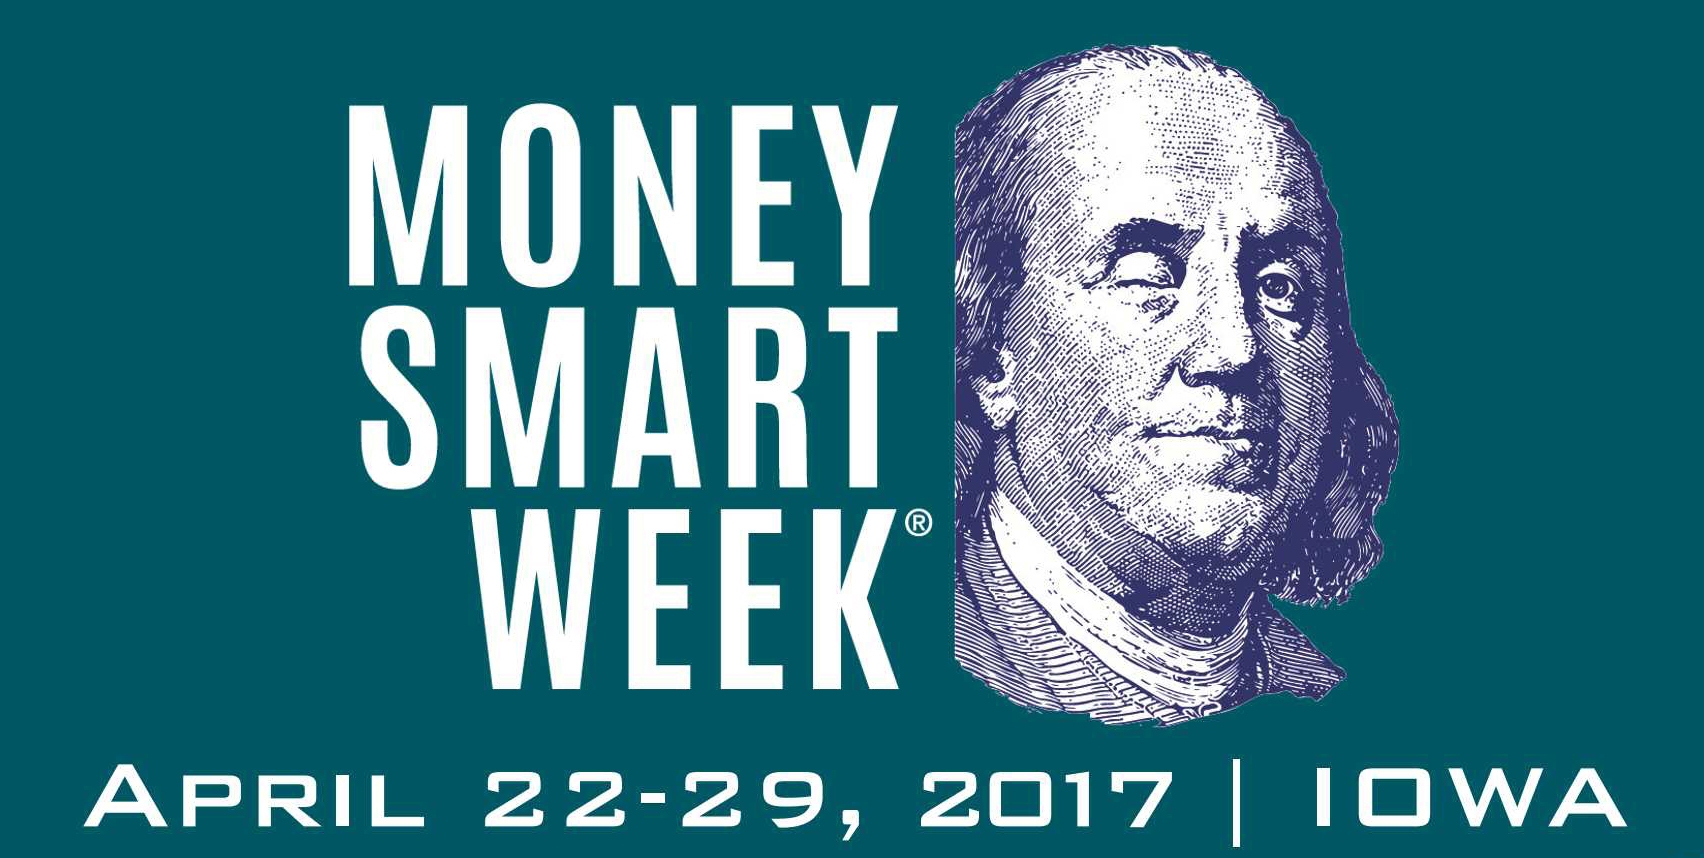 2017 Money Smart Week Poster Contest